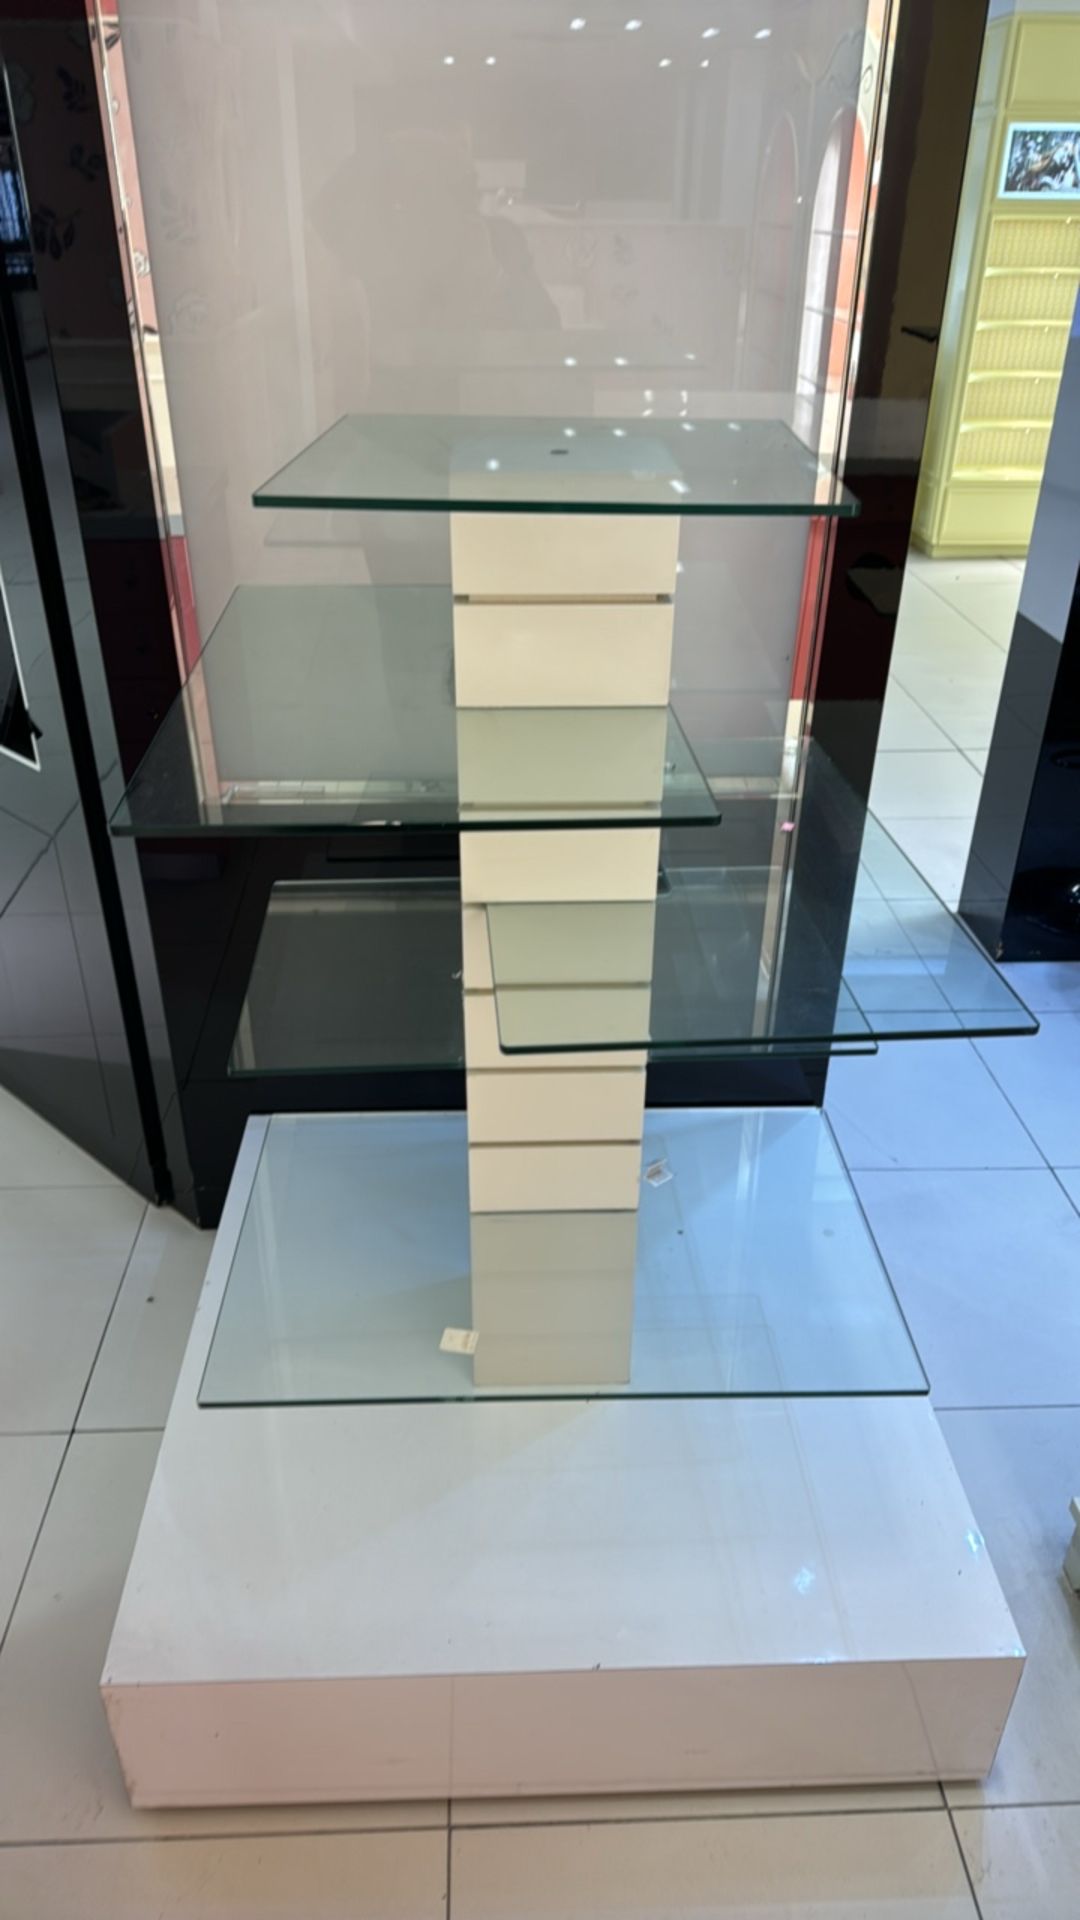 Glass Display Shelves on Gloss Unit - Image 3 of 3